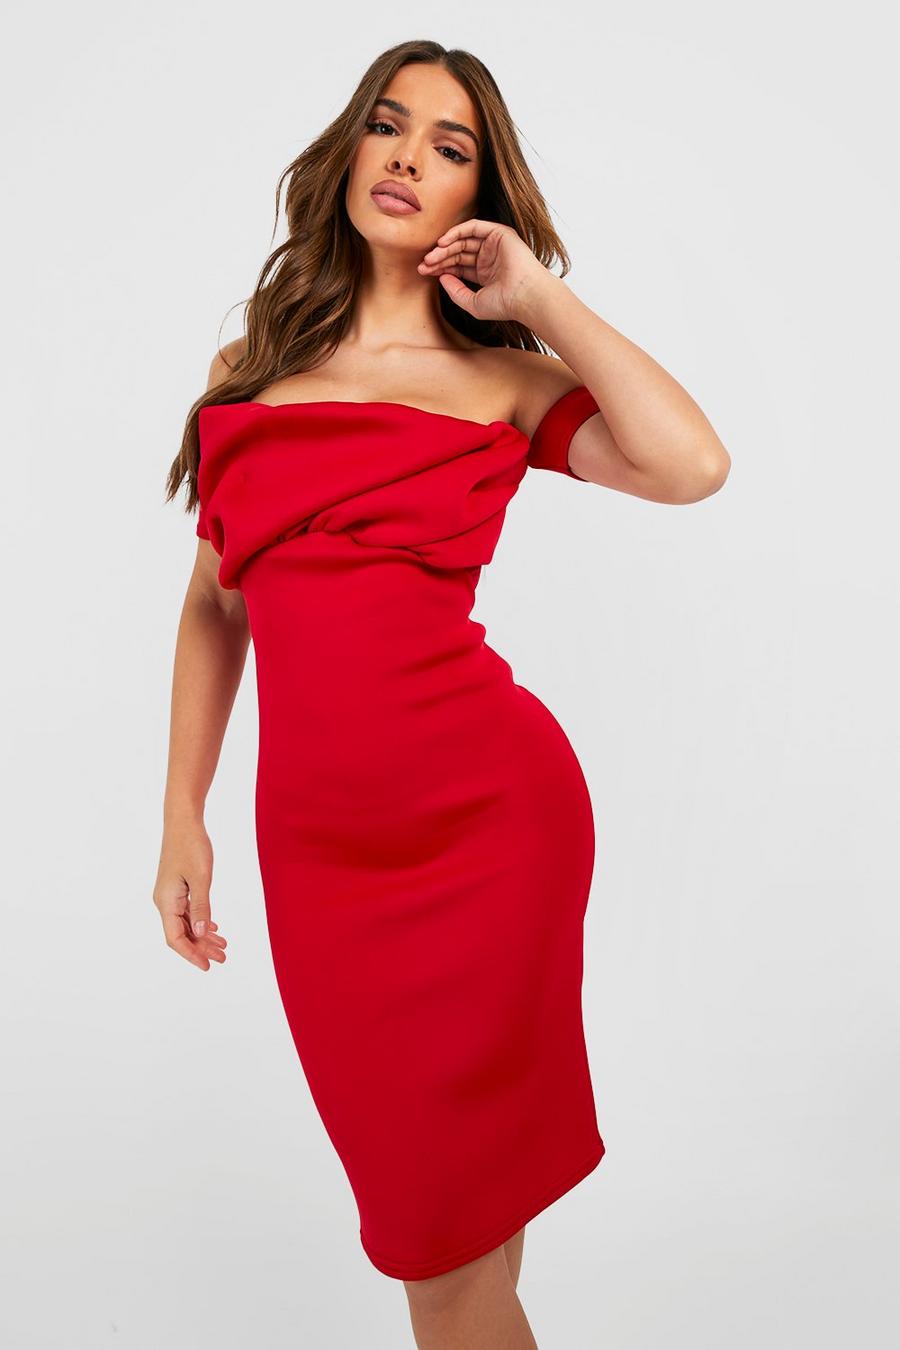 אדום rojo שמלת מידי מבד סקובה עם כתפיים חשופות וללא תפרים